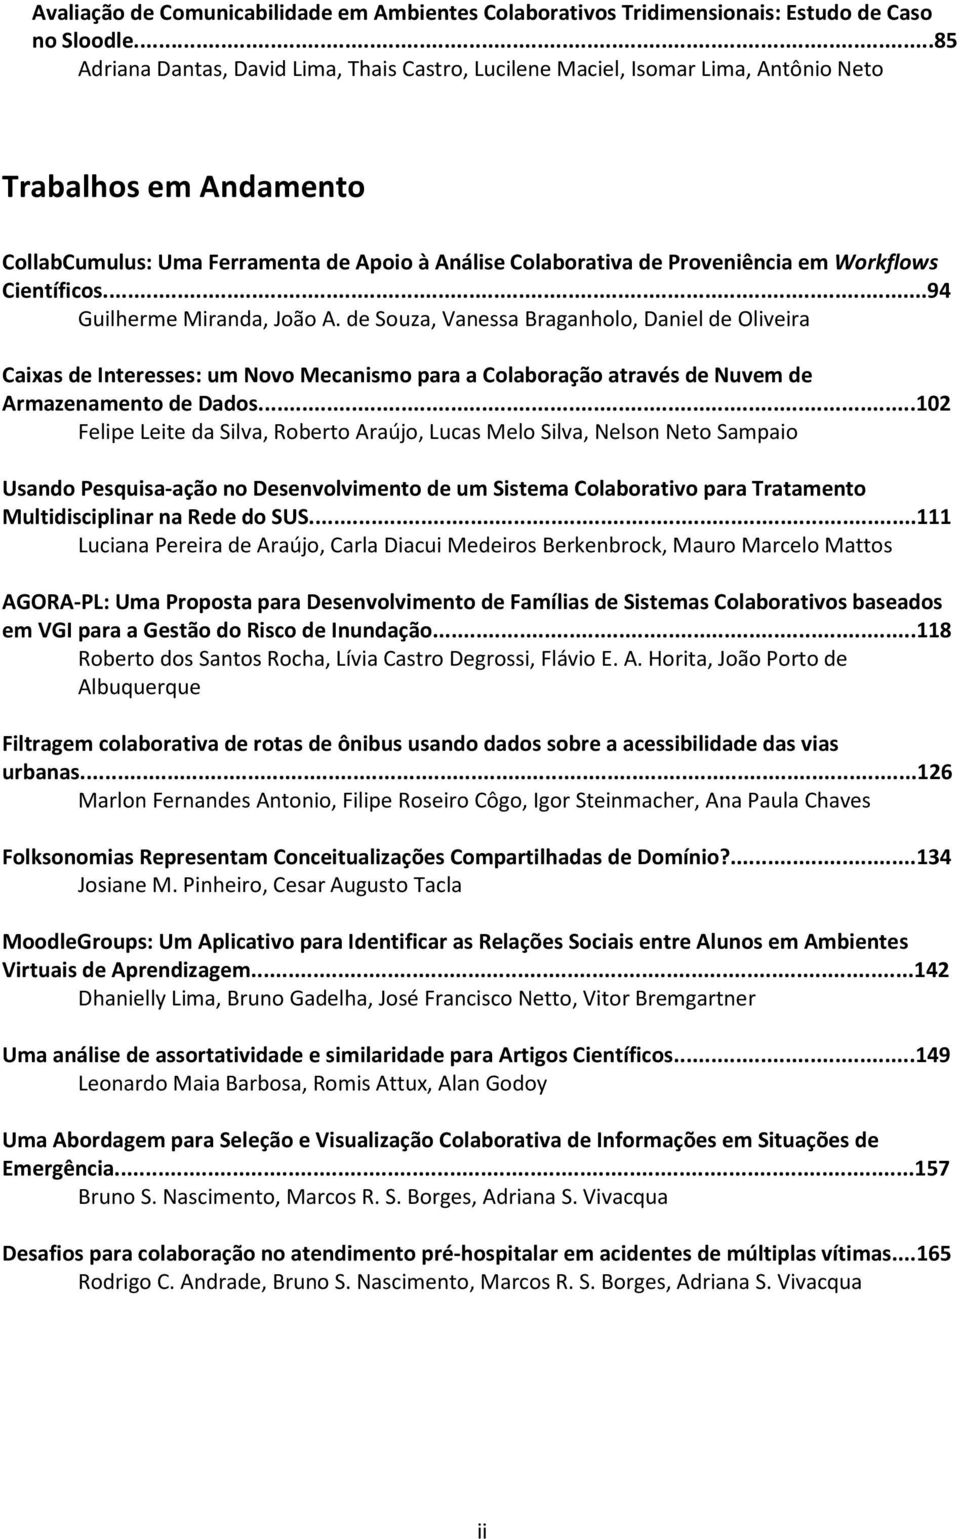 Workflows Científicos...94 Guilherme Miranda, João A.